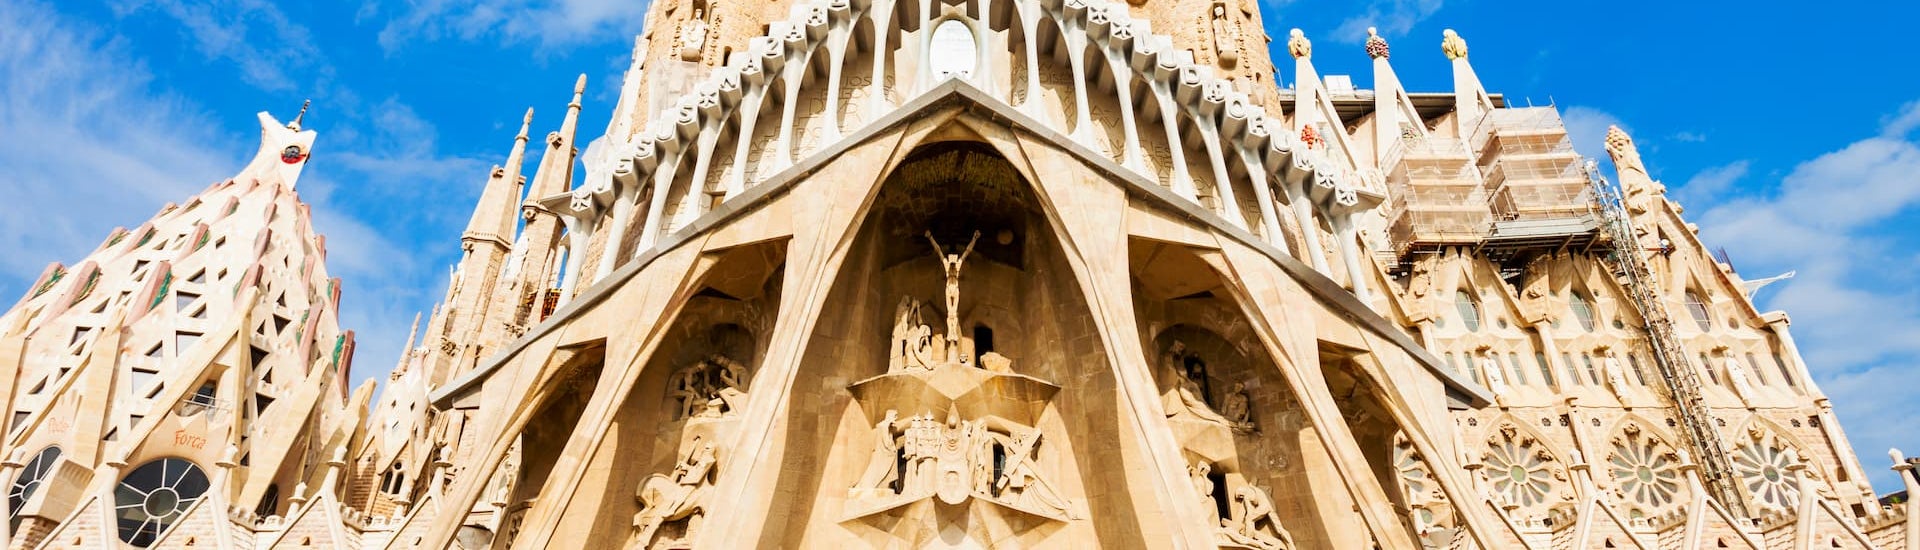 tour la catedral del mar barcelona